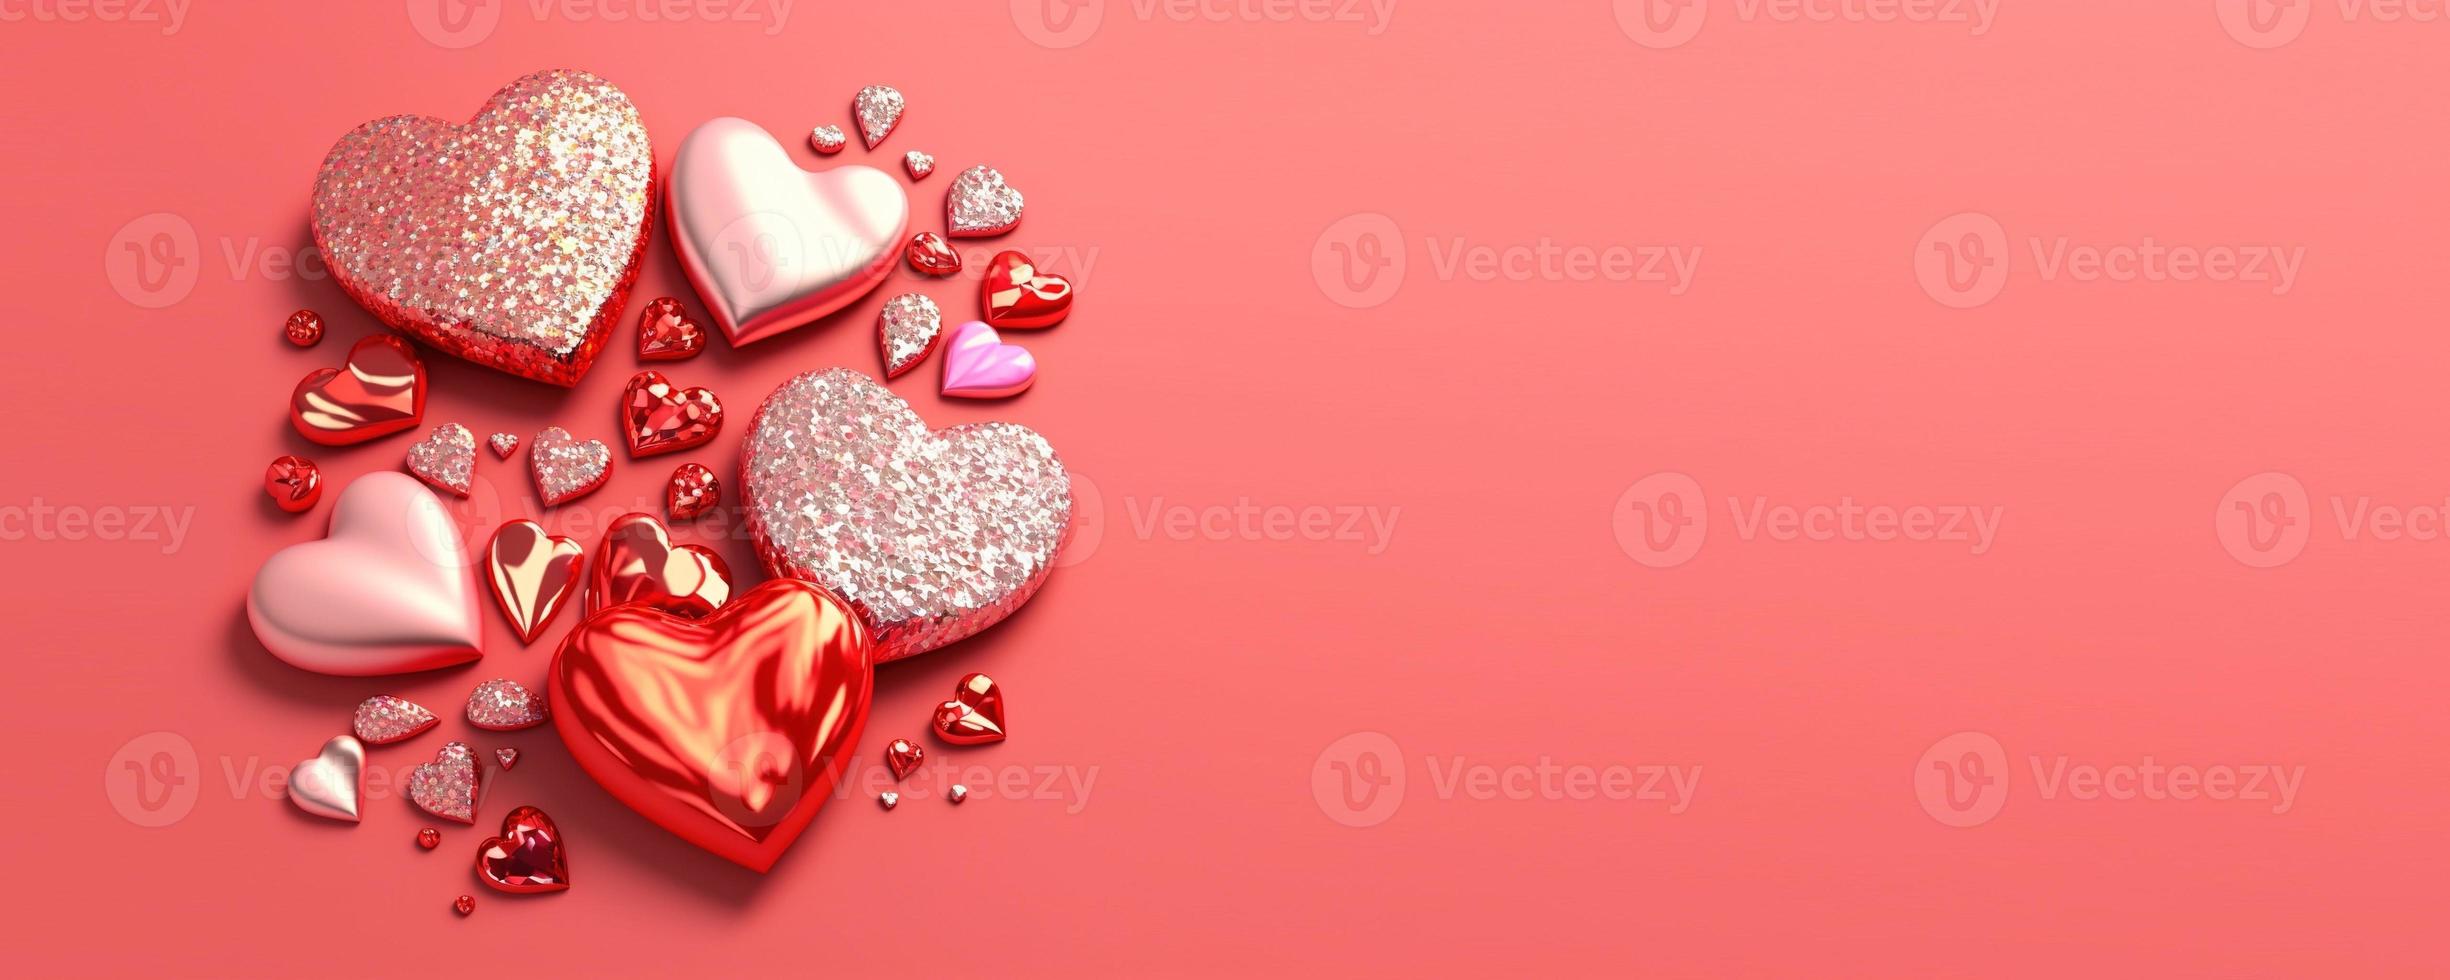 ilustração 3d do dia dos namorados do diamante de cristal do coração para banner e plano de fundo da promoção do dia dos namorados foto